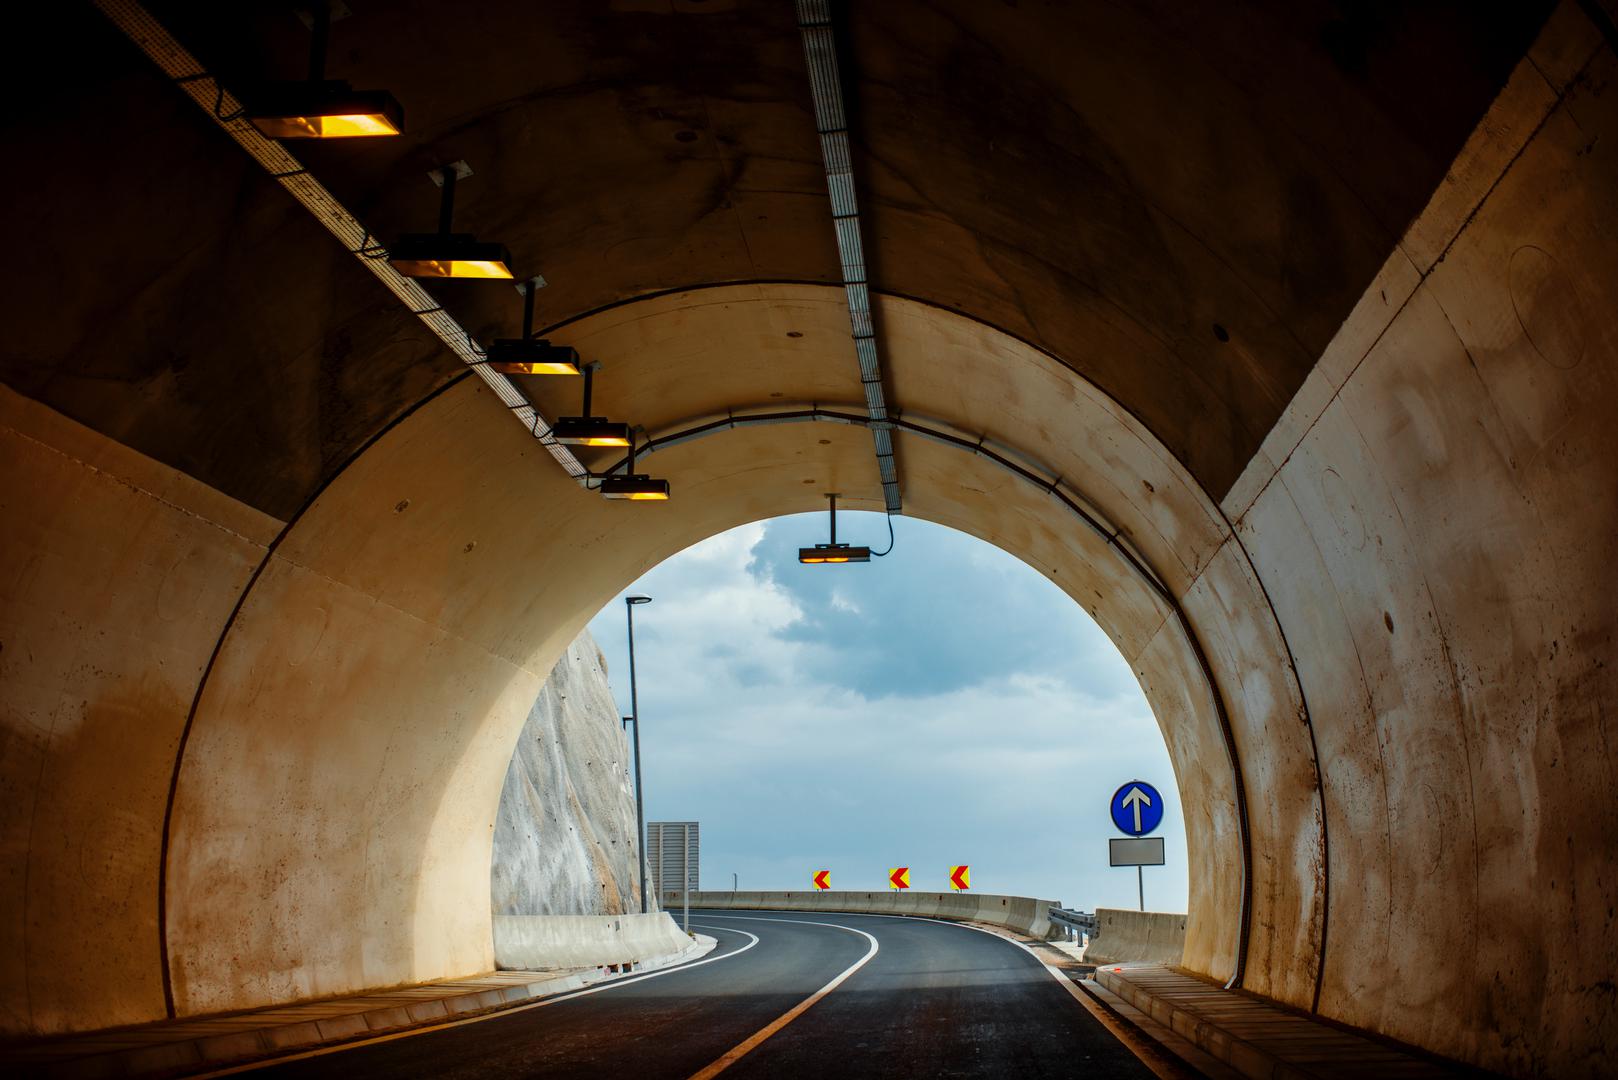 5. Tunel Debeli brijeg, 2.467 metara: Tunel Debeli brijeg, dio projekta ‘Cestovna povezanost južne Dalmacije’, tvrtka Strabag iskopala je i dovršila prije roka, unatoč izazovima pandemije.